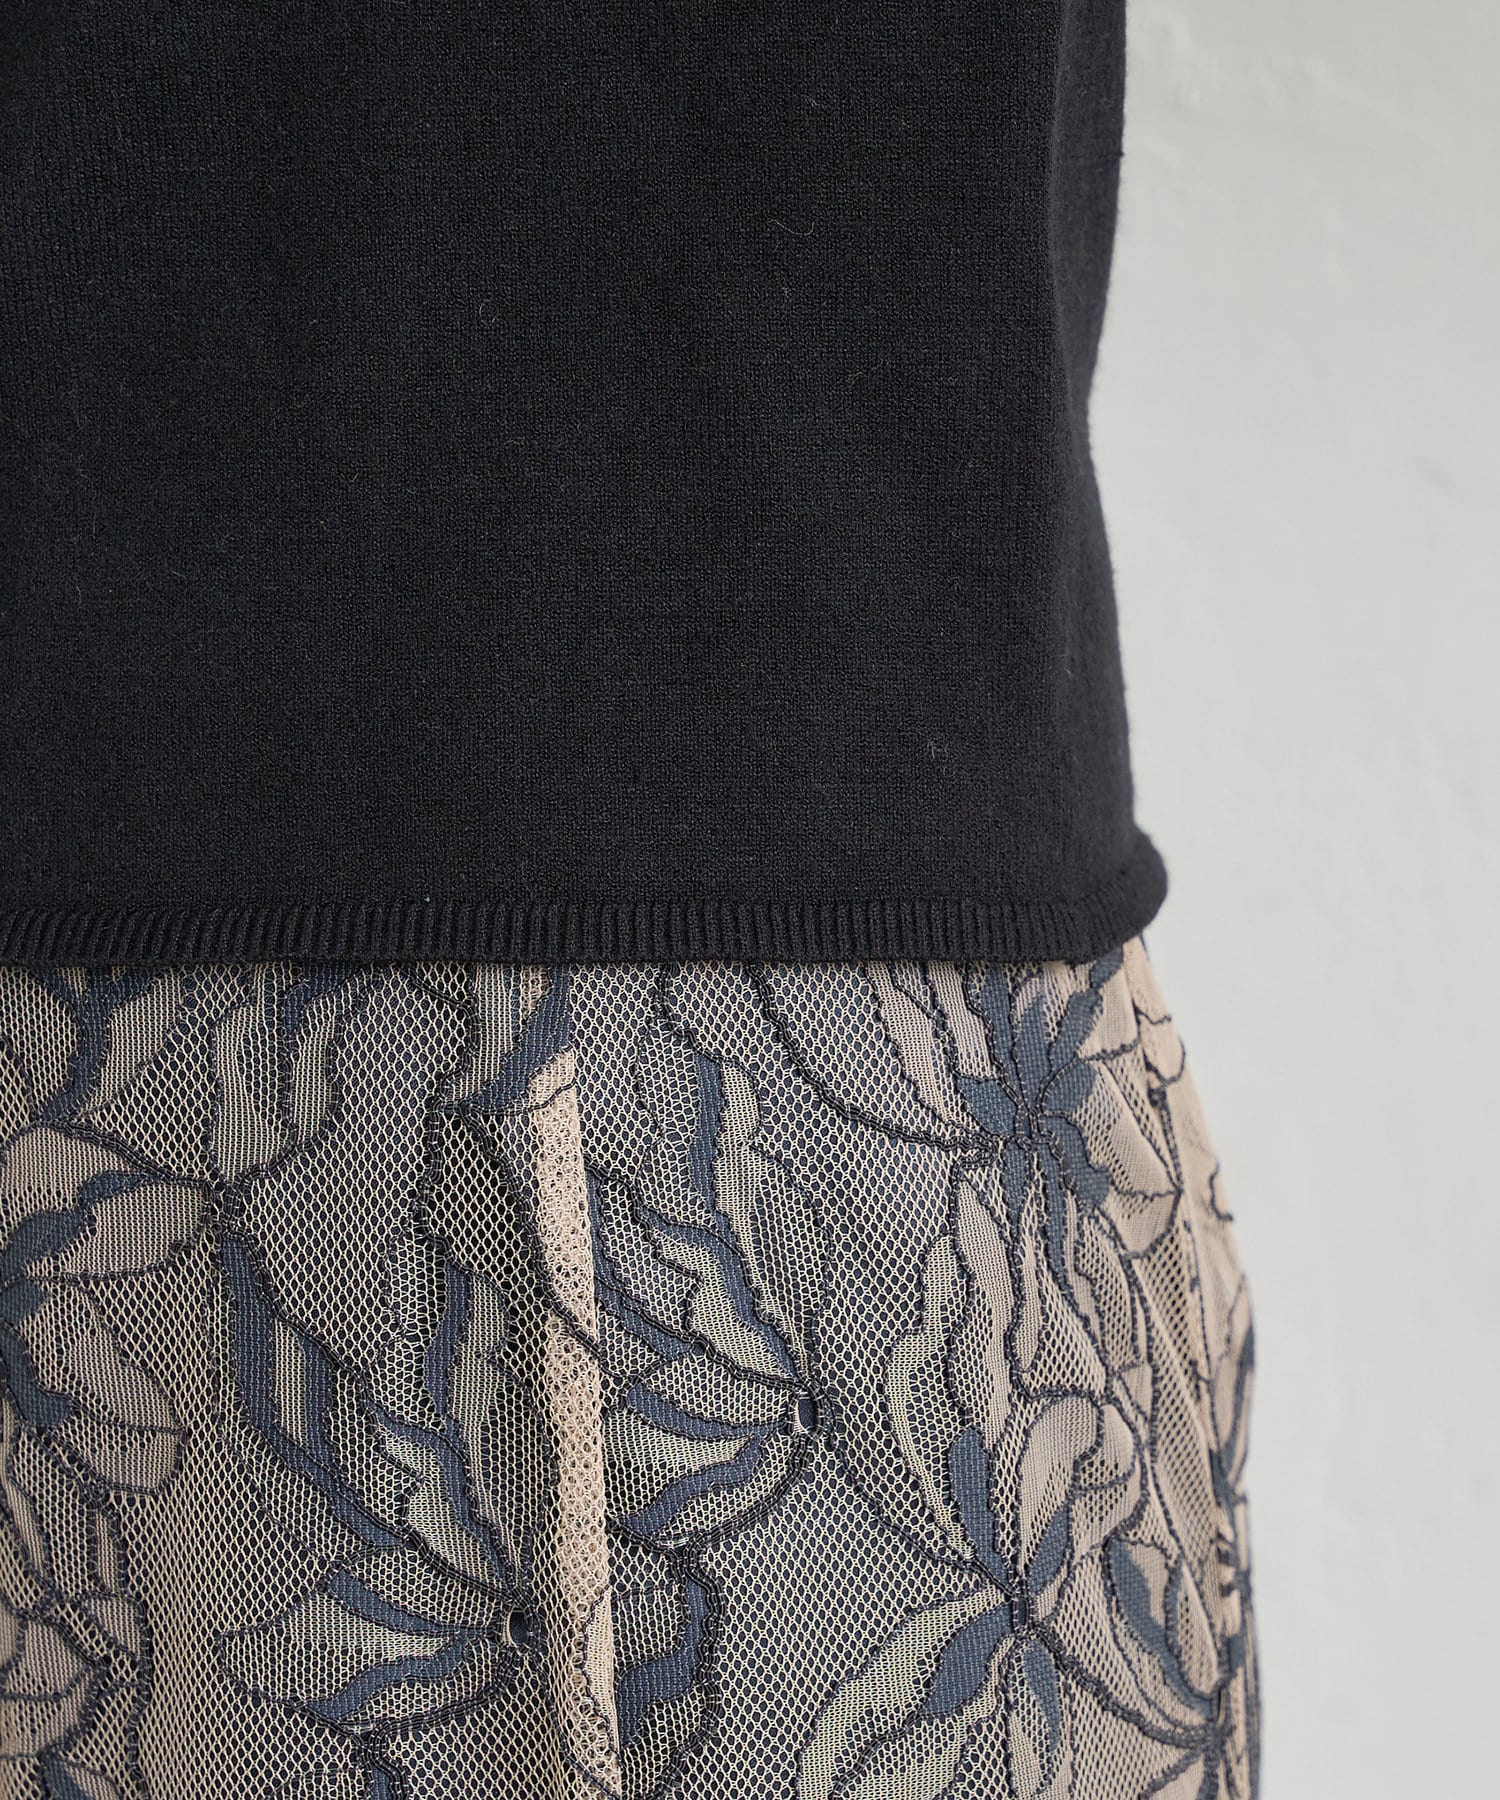 natural couture(ナチュラルクチュール) 【WEB限定】osono衿付きキレイめニット